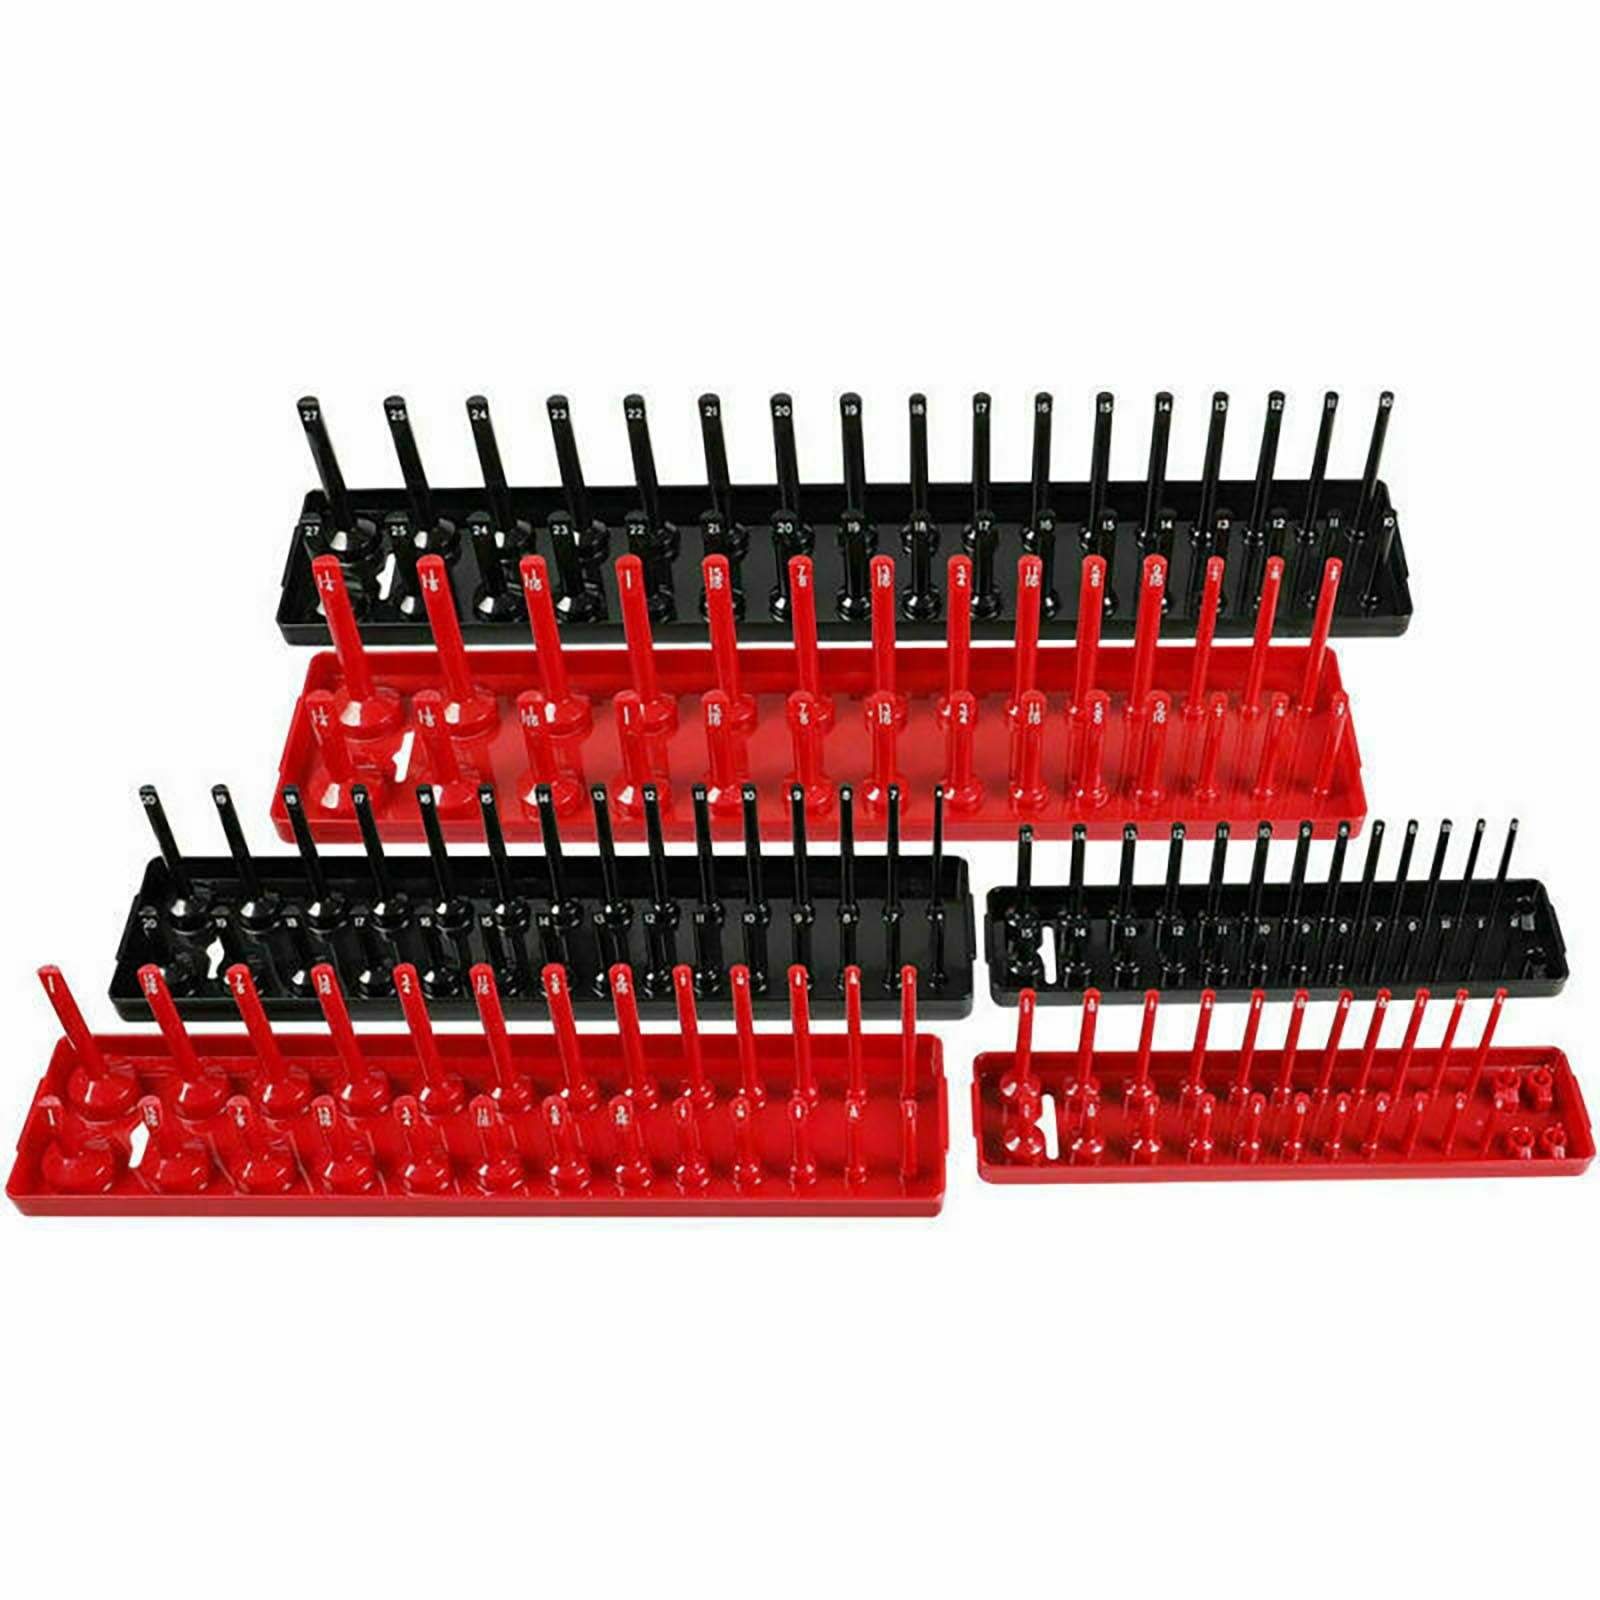 6pcs Socket Organizer Tray Rack Storage Holder Tool Metric SAE 1/4" 3/8" 1/2" 